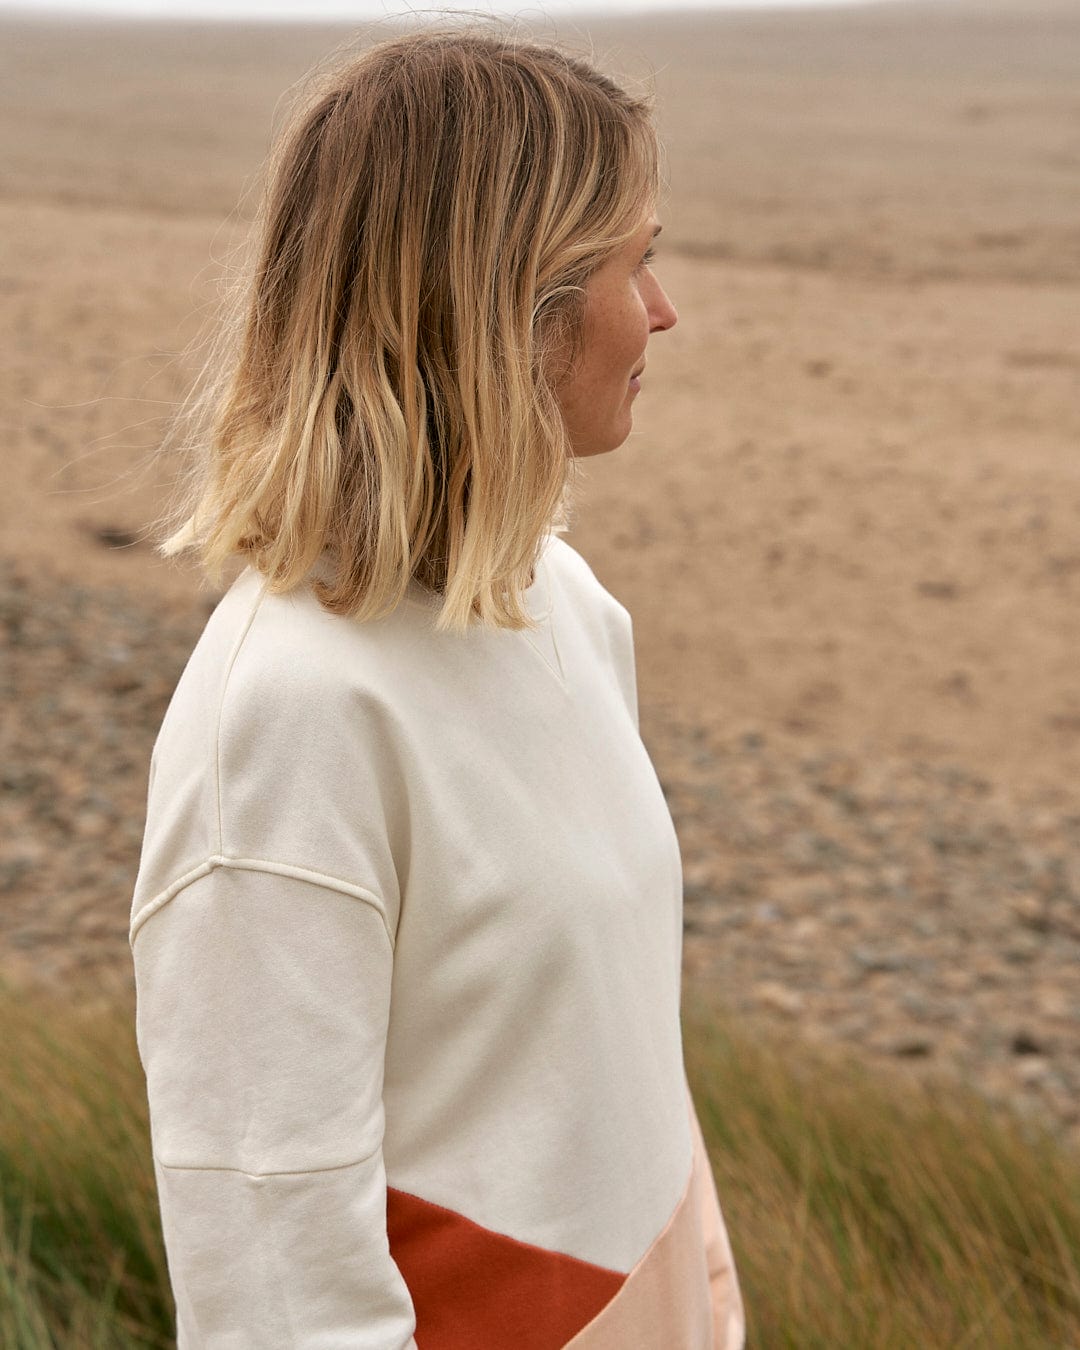 A woman standing in a field wearing a Saltrock Sofie - Womens Boyfriend Fit Sweat - Light Orange/Cream sweater.